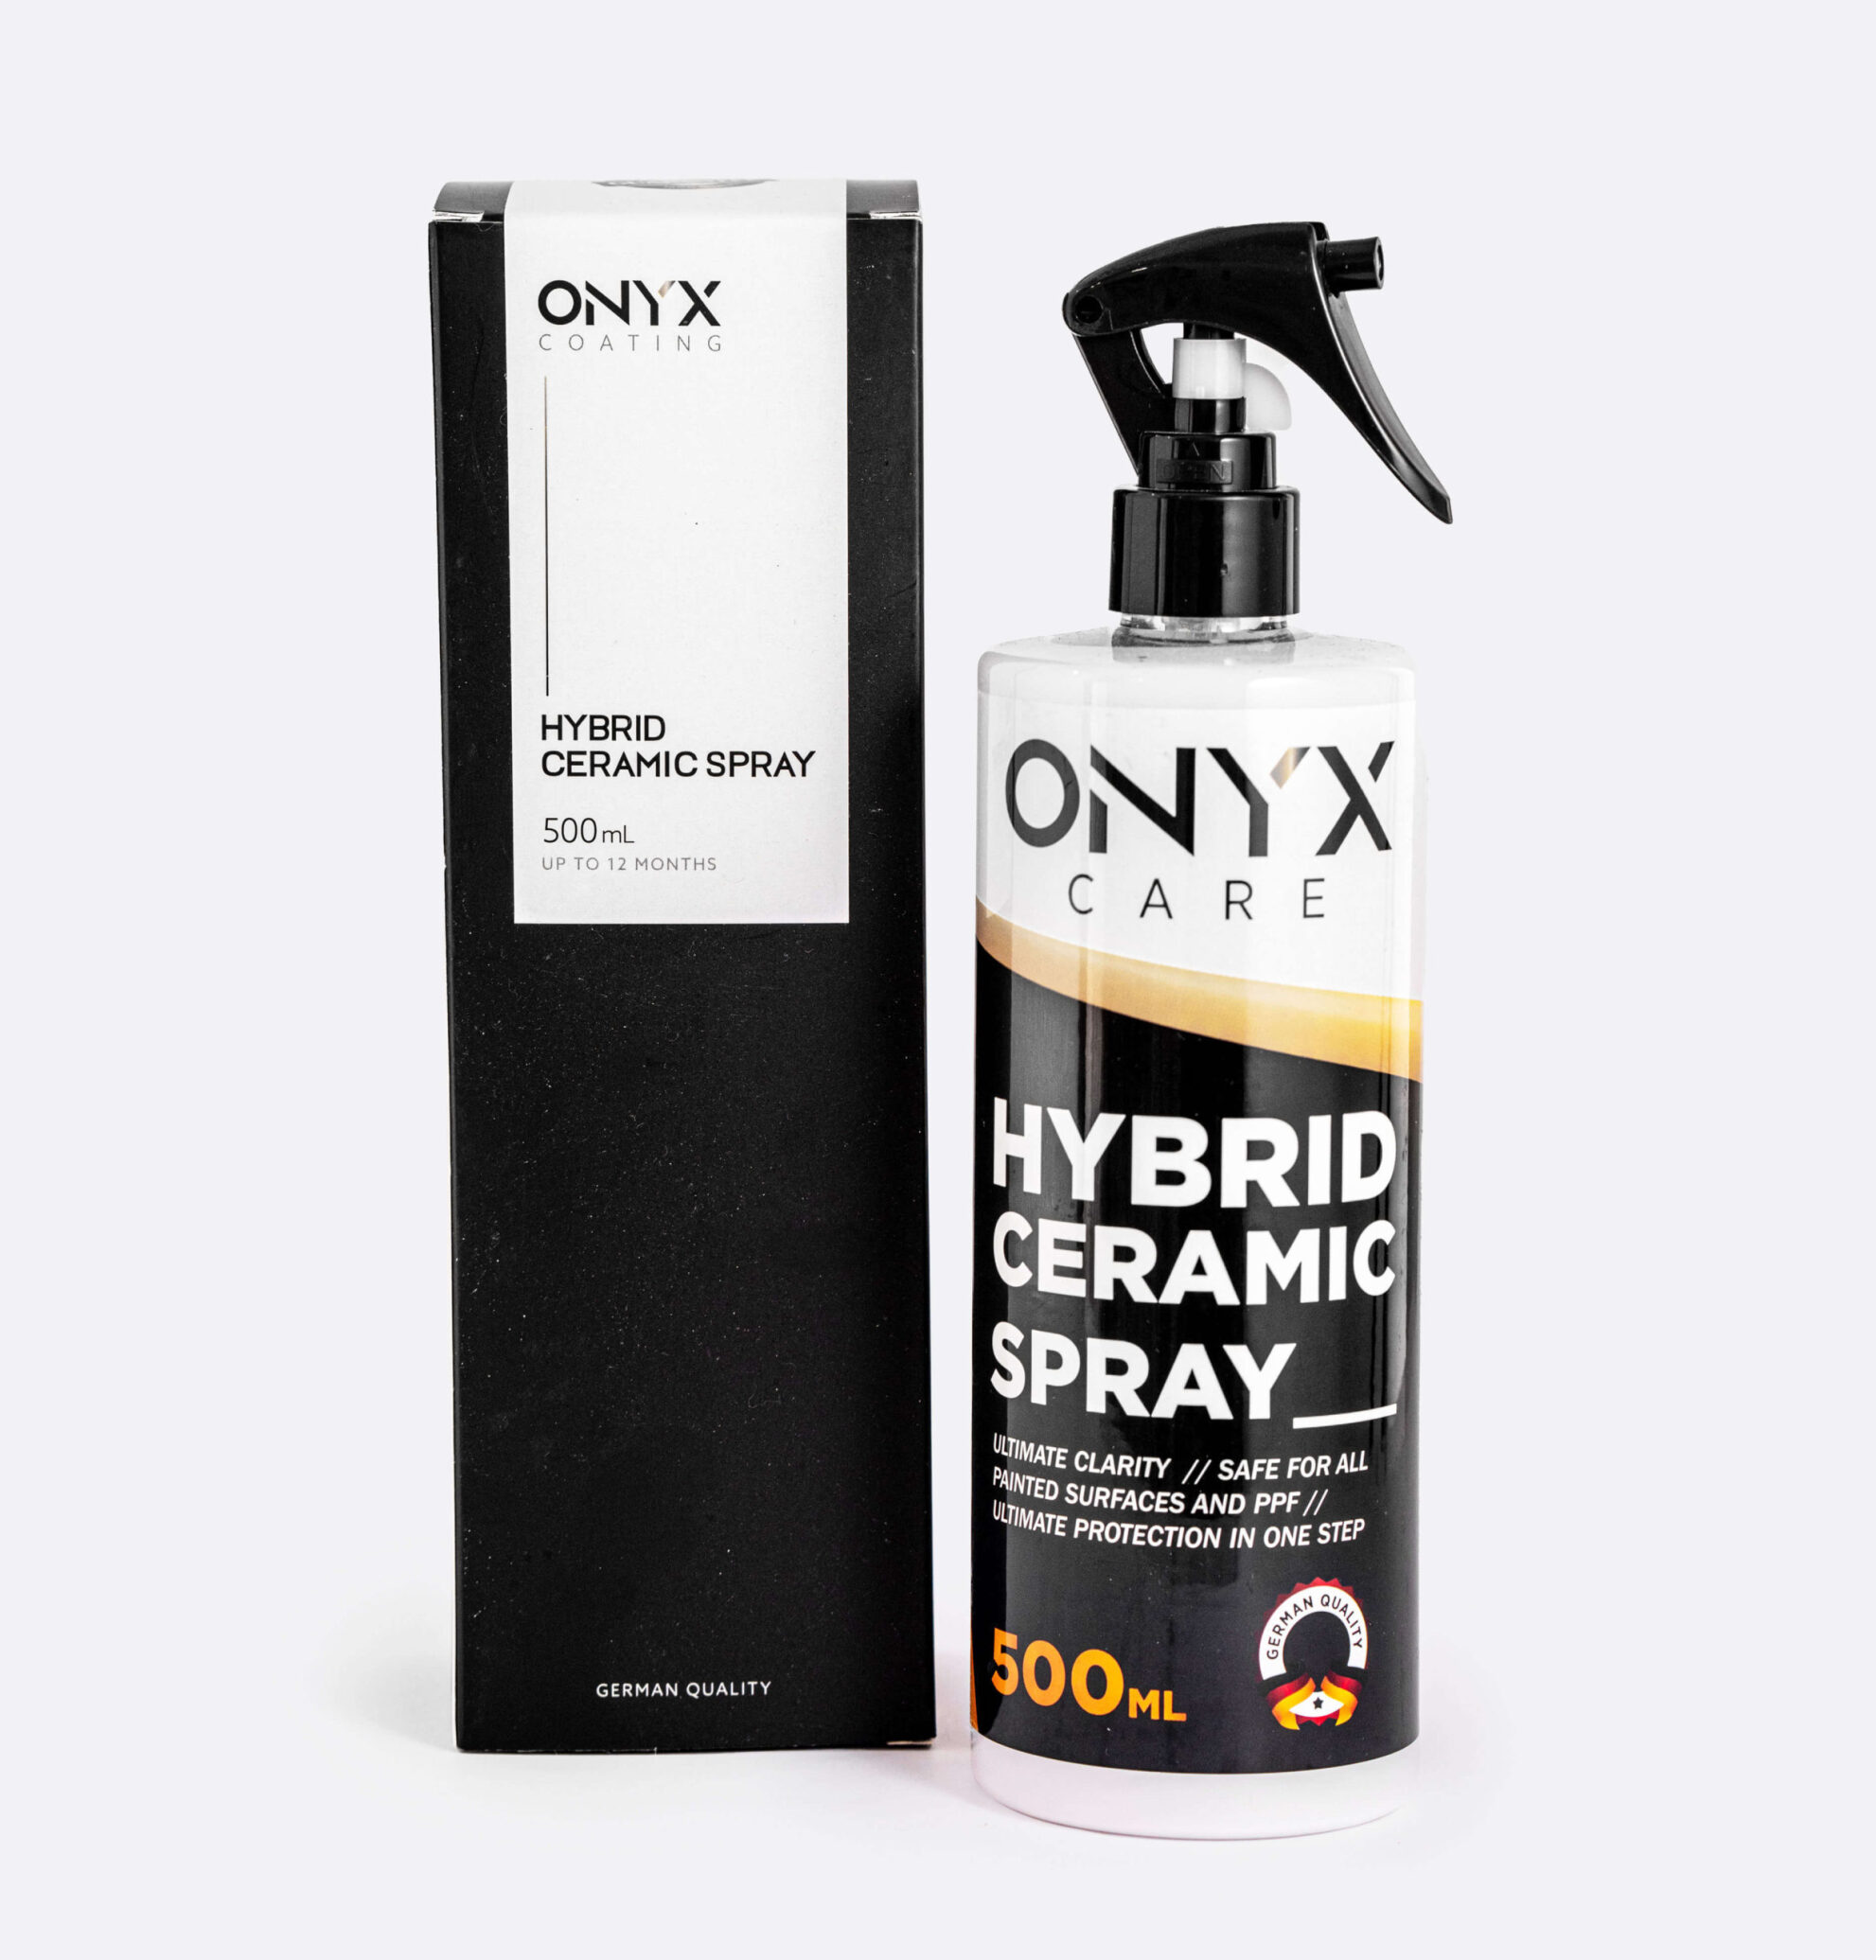  اسپری سرامیک هایبرید اونیکس Onyx Hybrid Ceramic Spray 